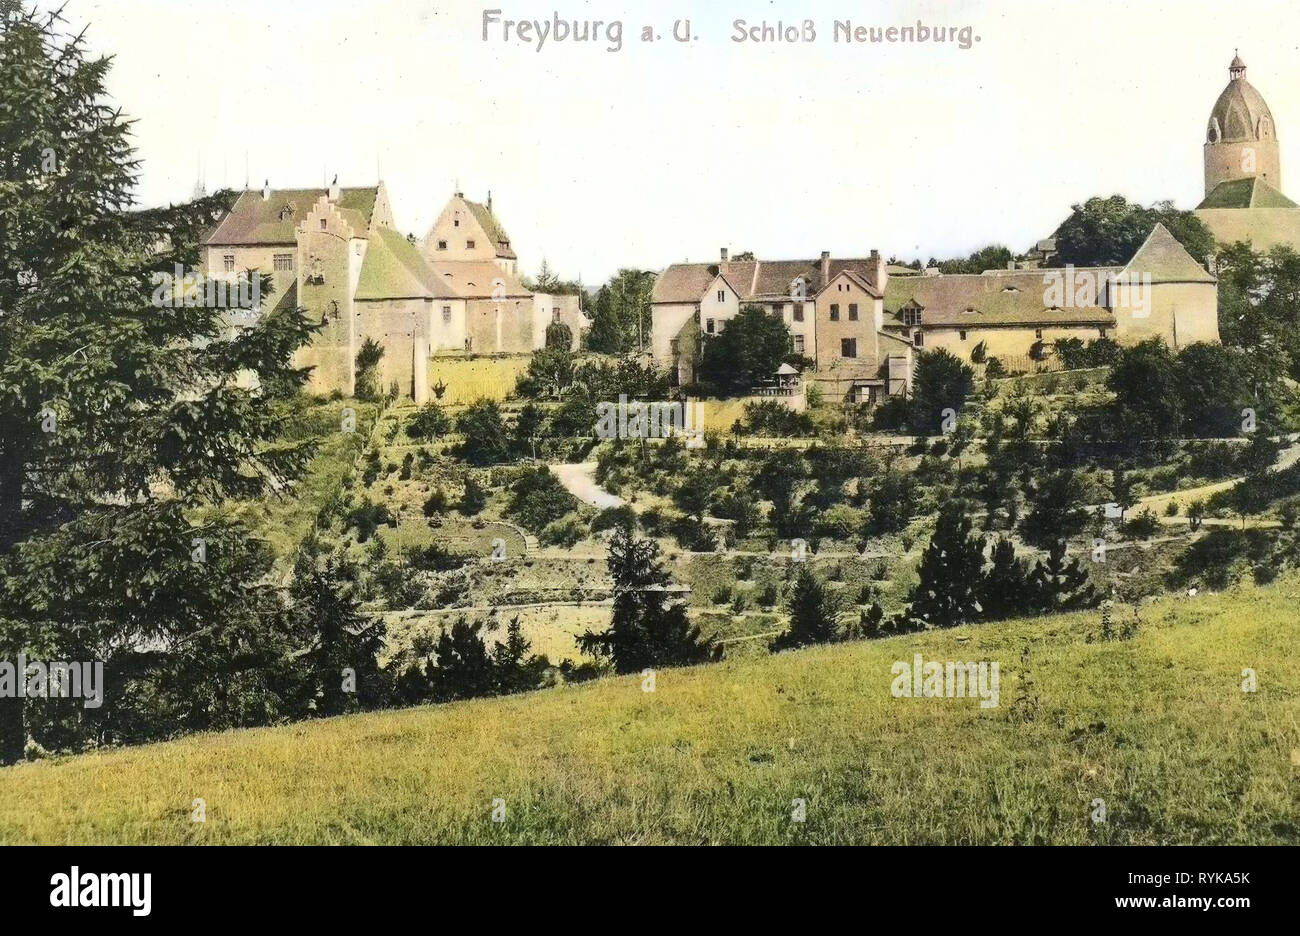 Neuenburg Castle (Freyburg), 1912, Saxony-Anhalt, Freyburg, Schloß Neuenburg, Germany Stock Photo